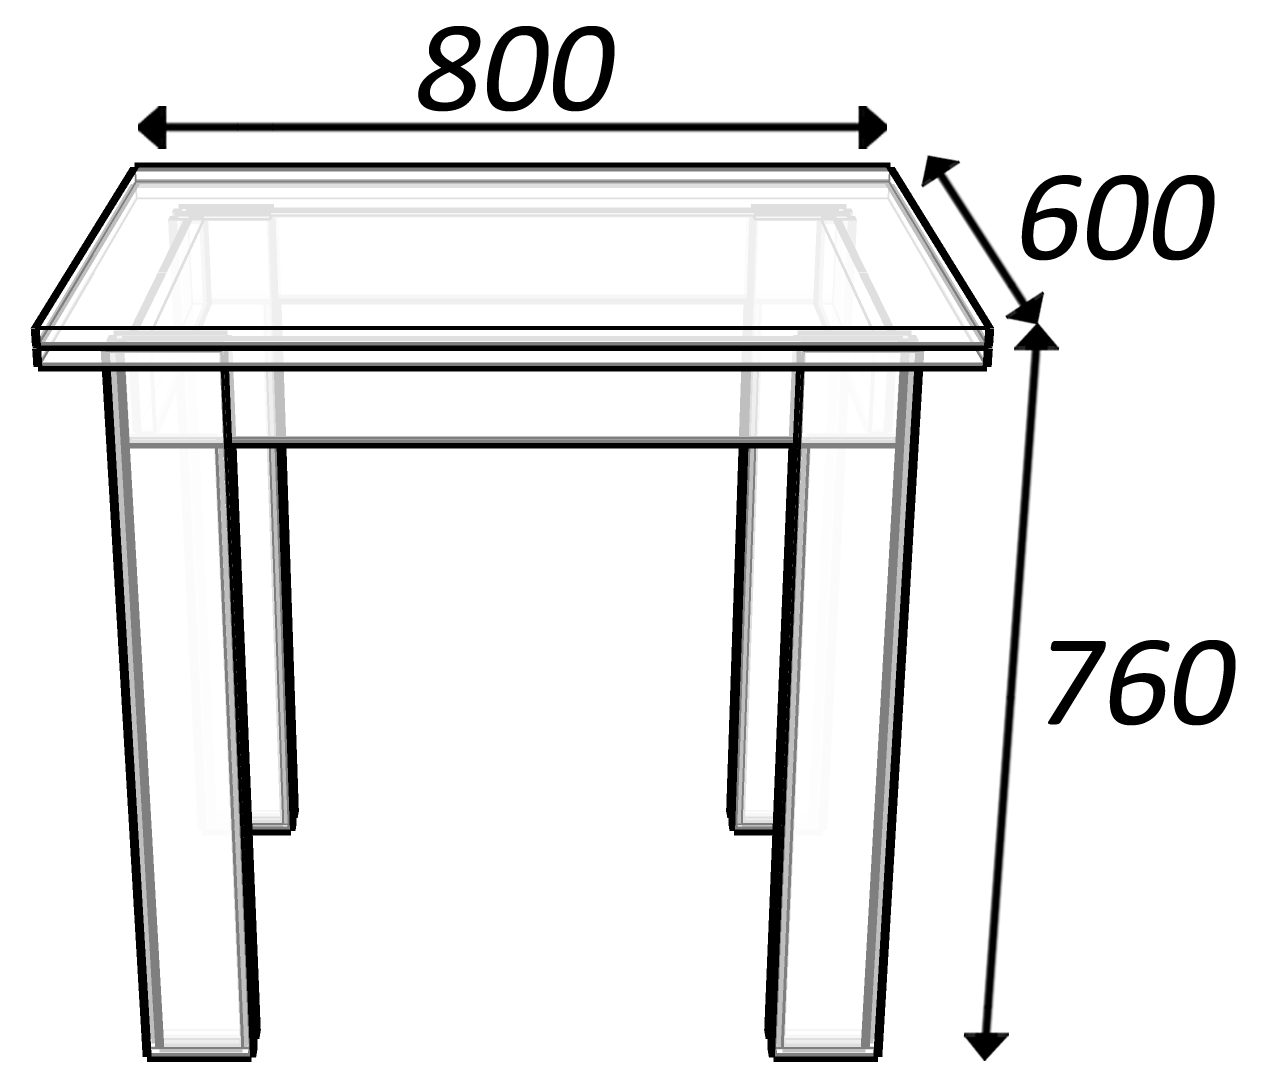 средний размер кухонного стола